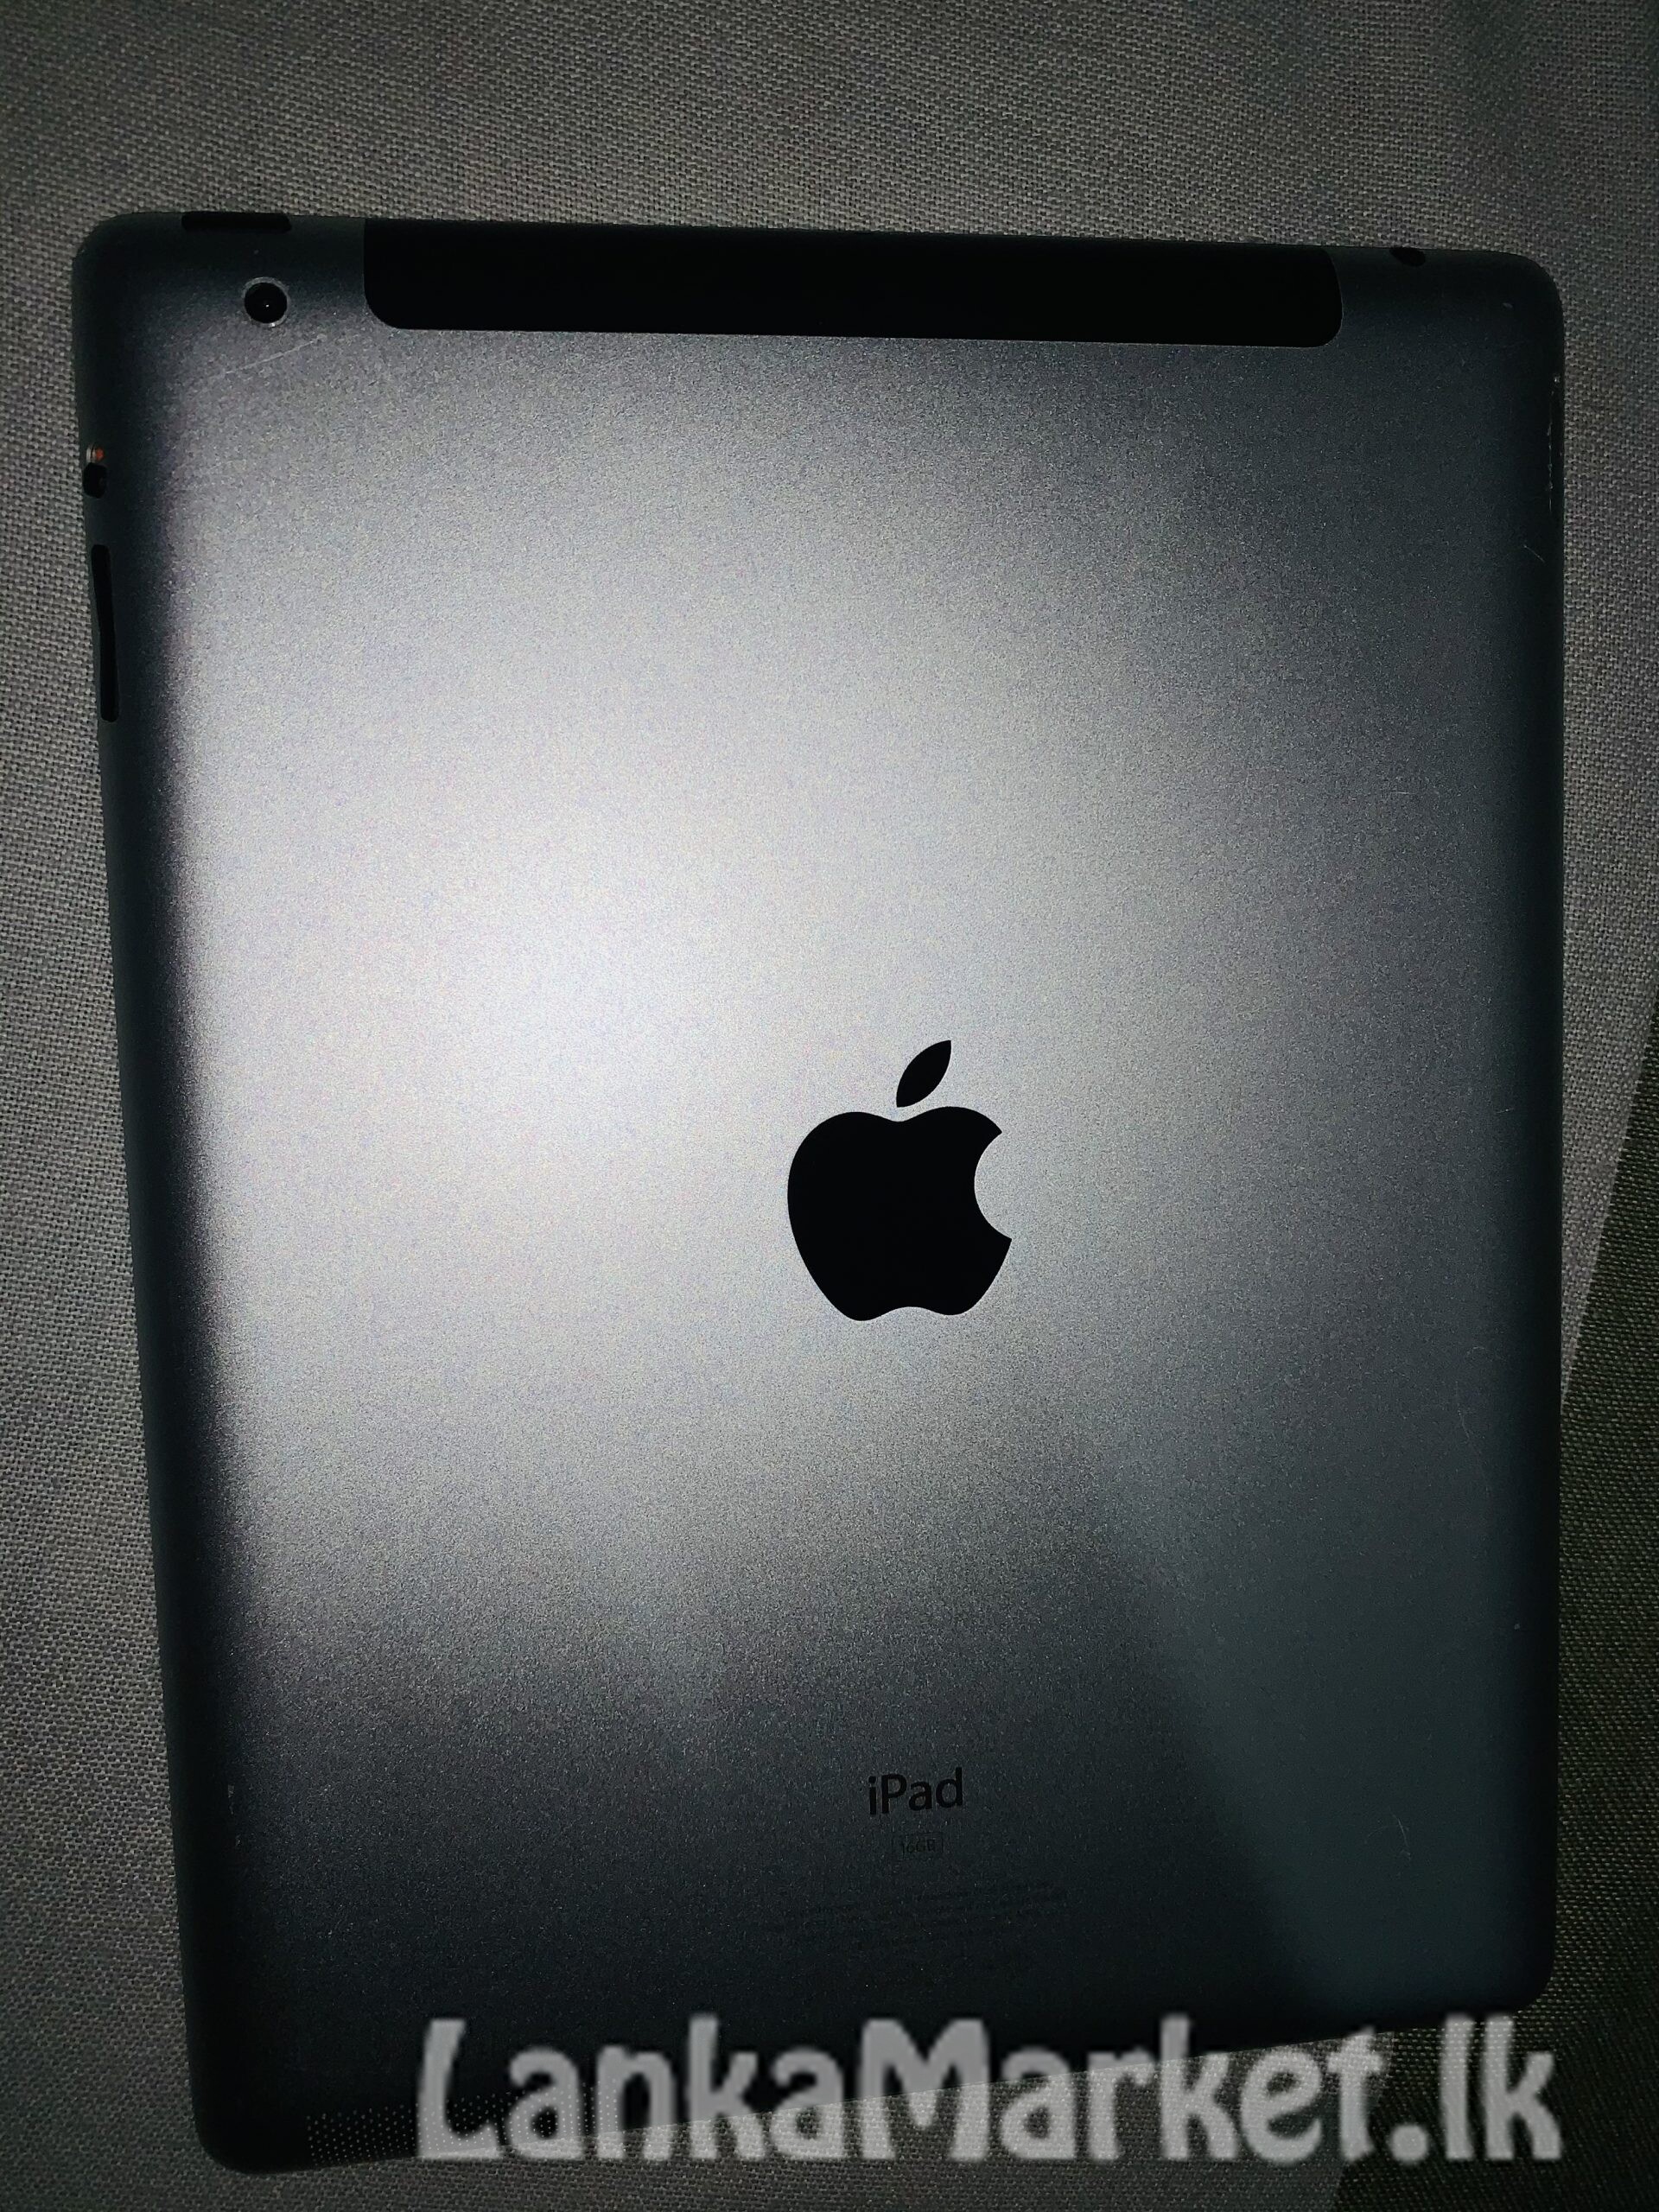 iPad 2 MC773X/A – Wi-Fi/GSM 16GB Black Model